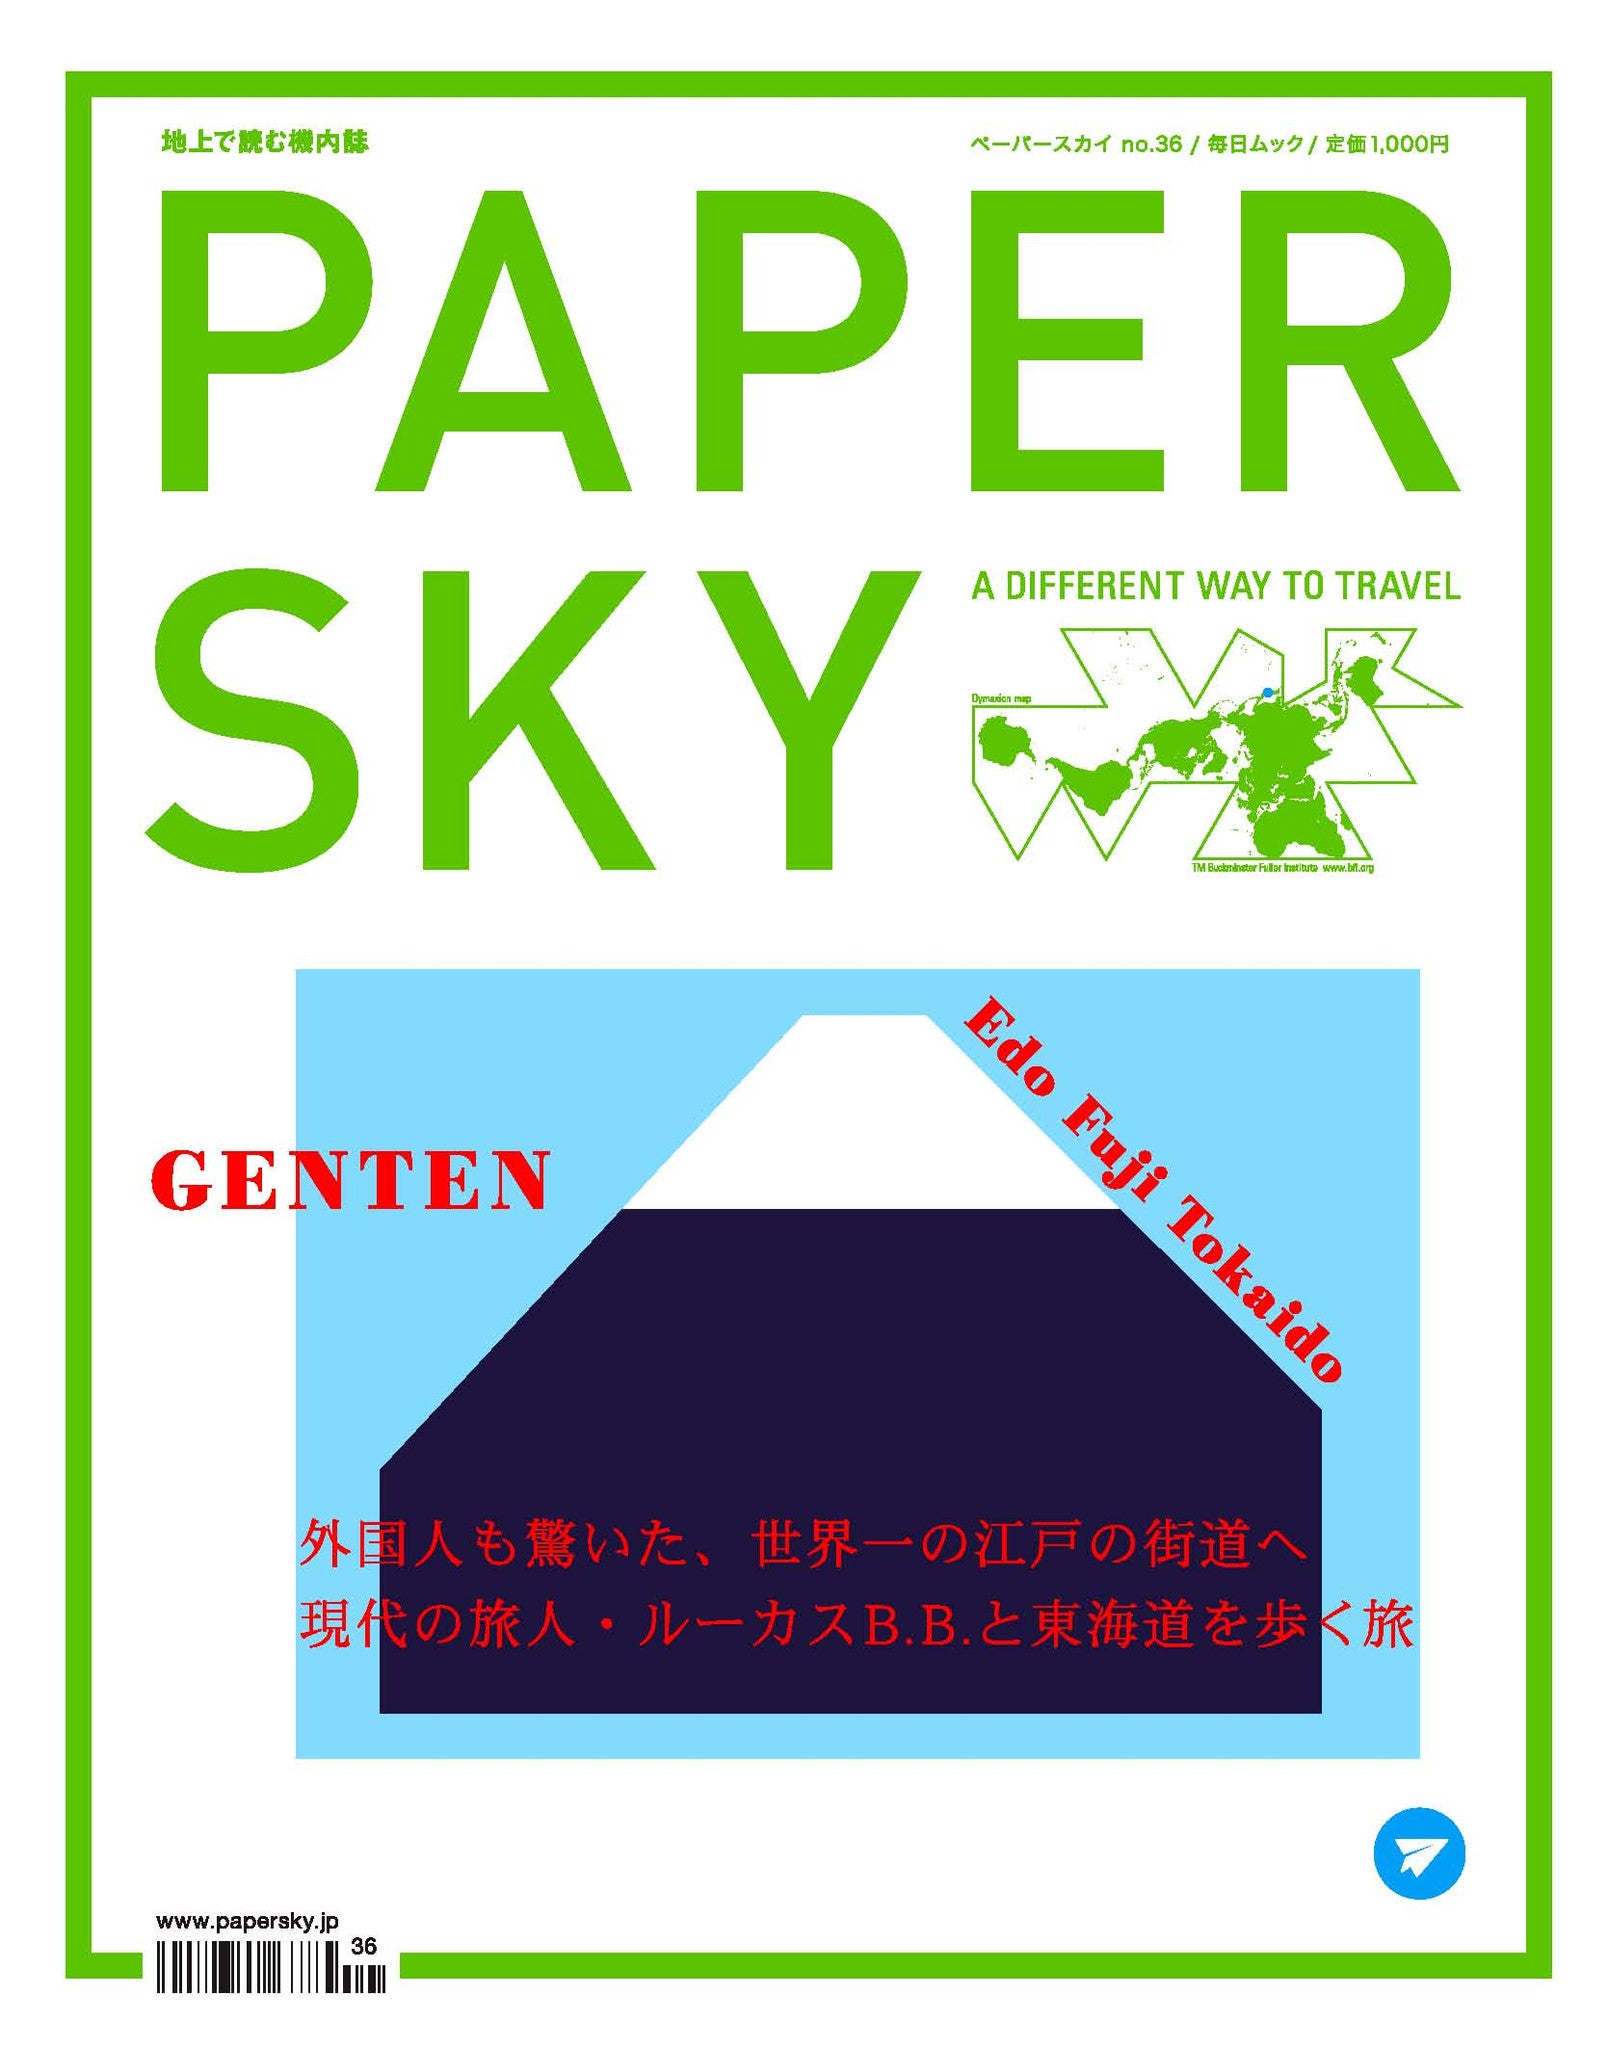 ルーカスB.B.と東海道を歩く旅, papersky magazine, tokaido